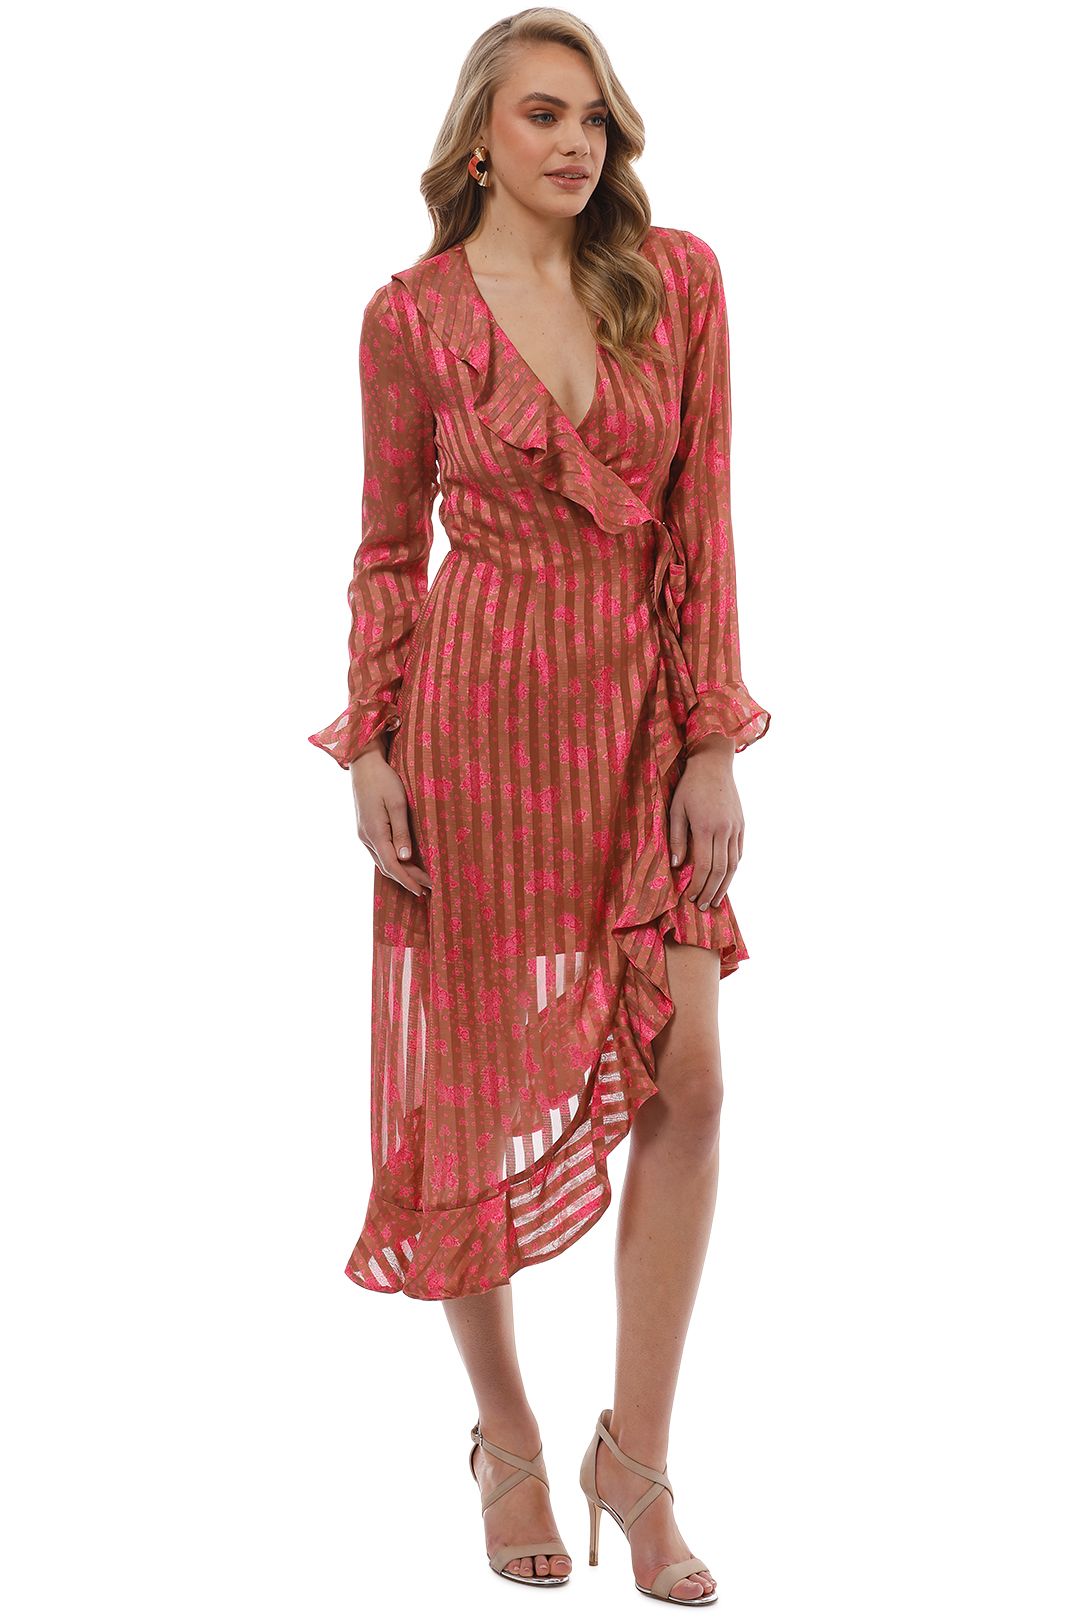 CMEO Collective - Significant Midi Dress - Copper Rose - Side